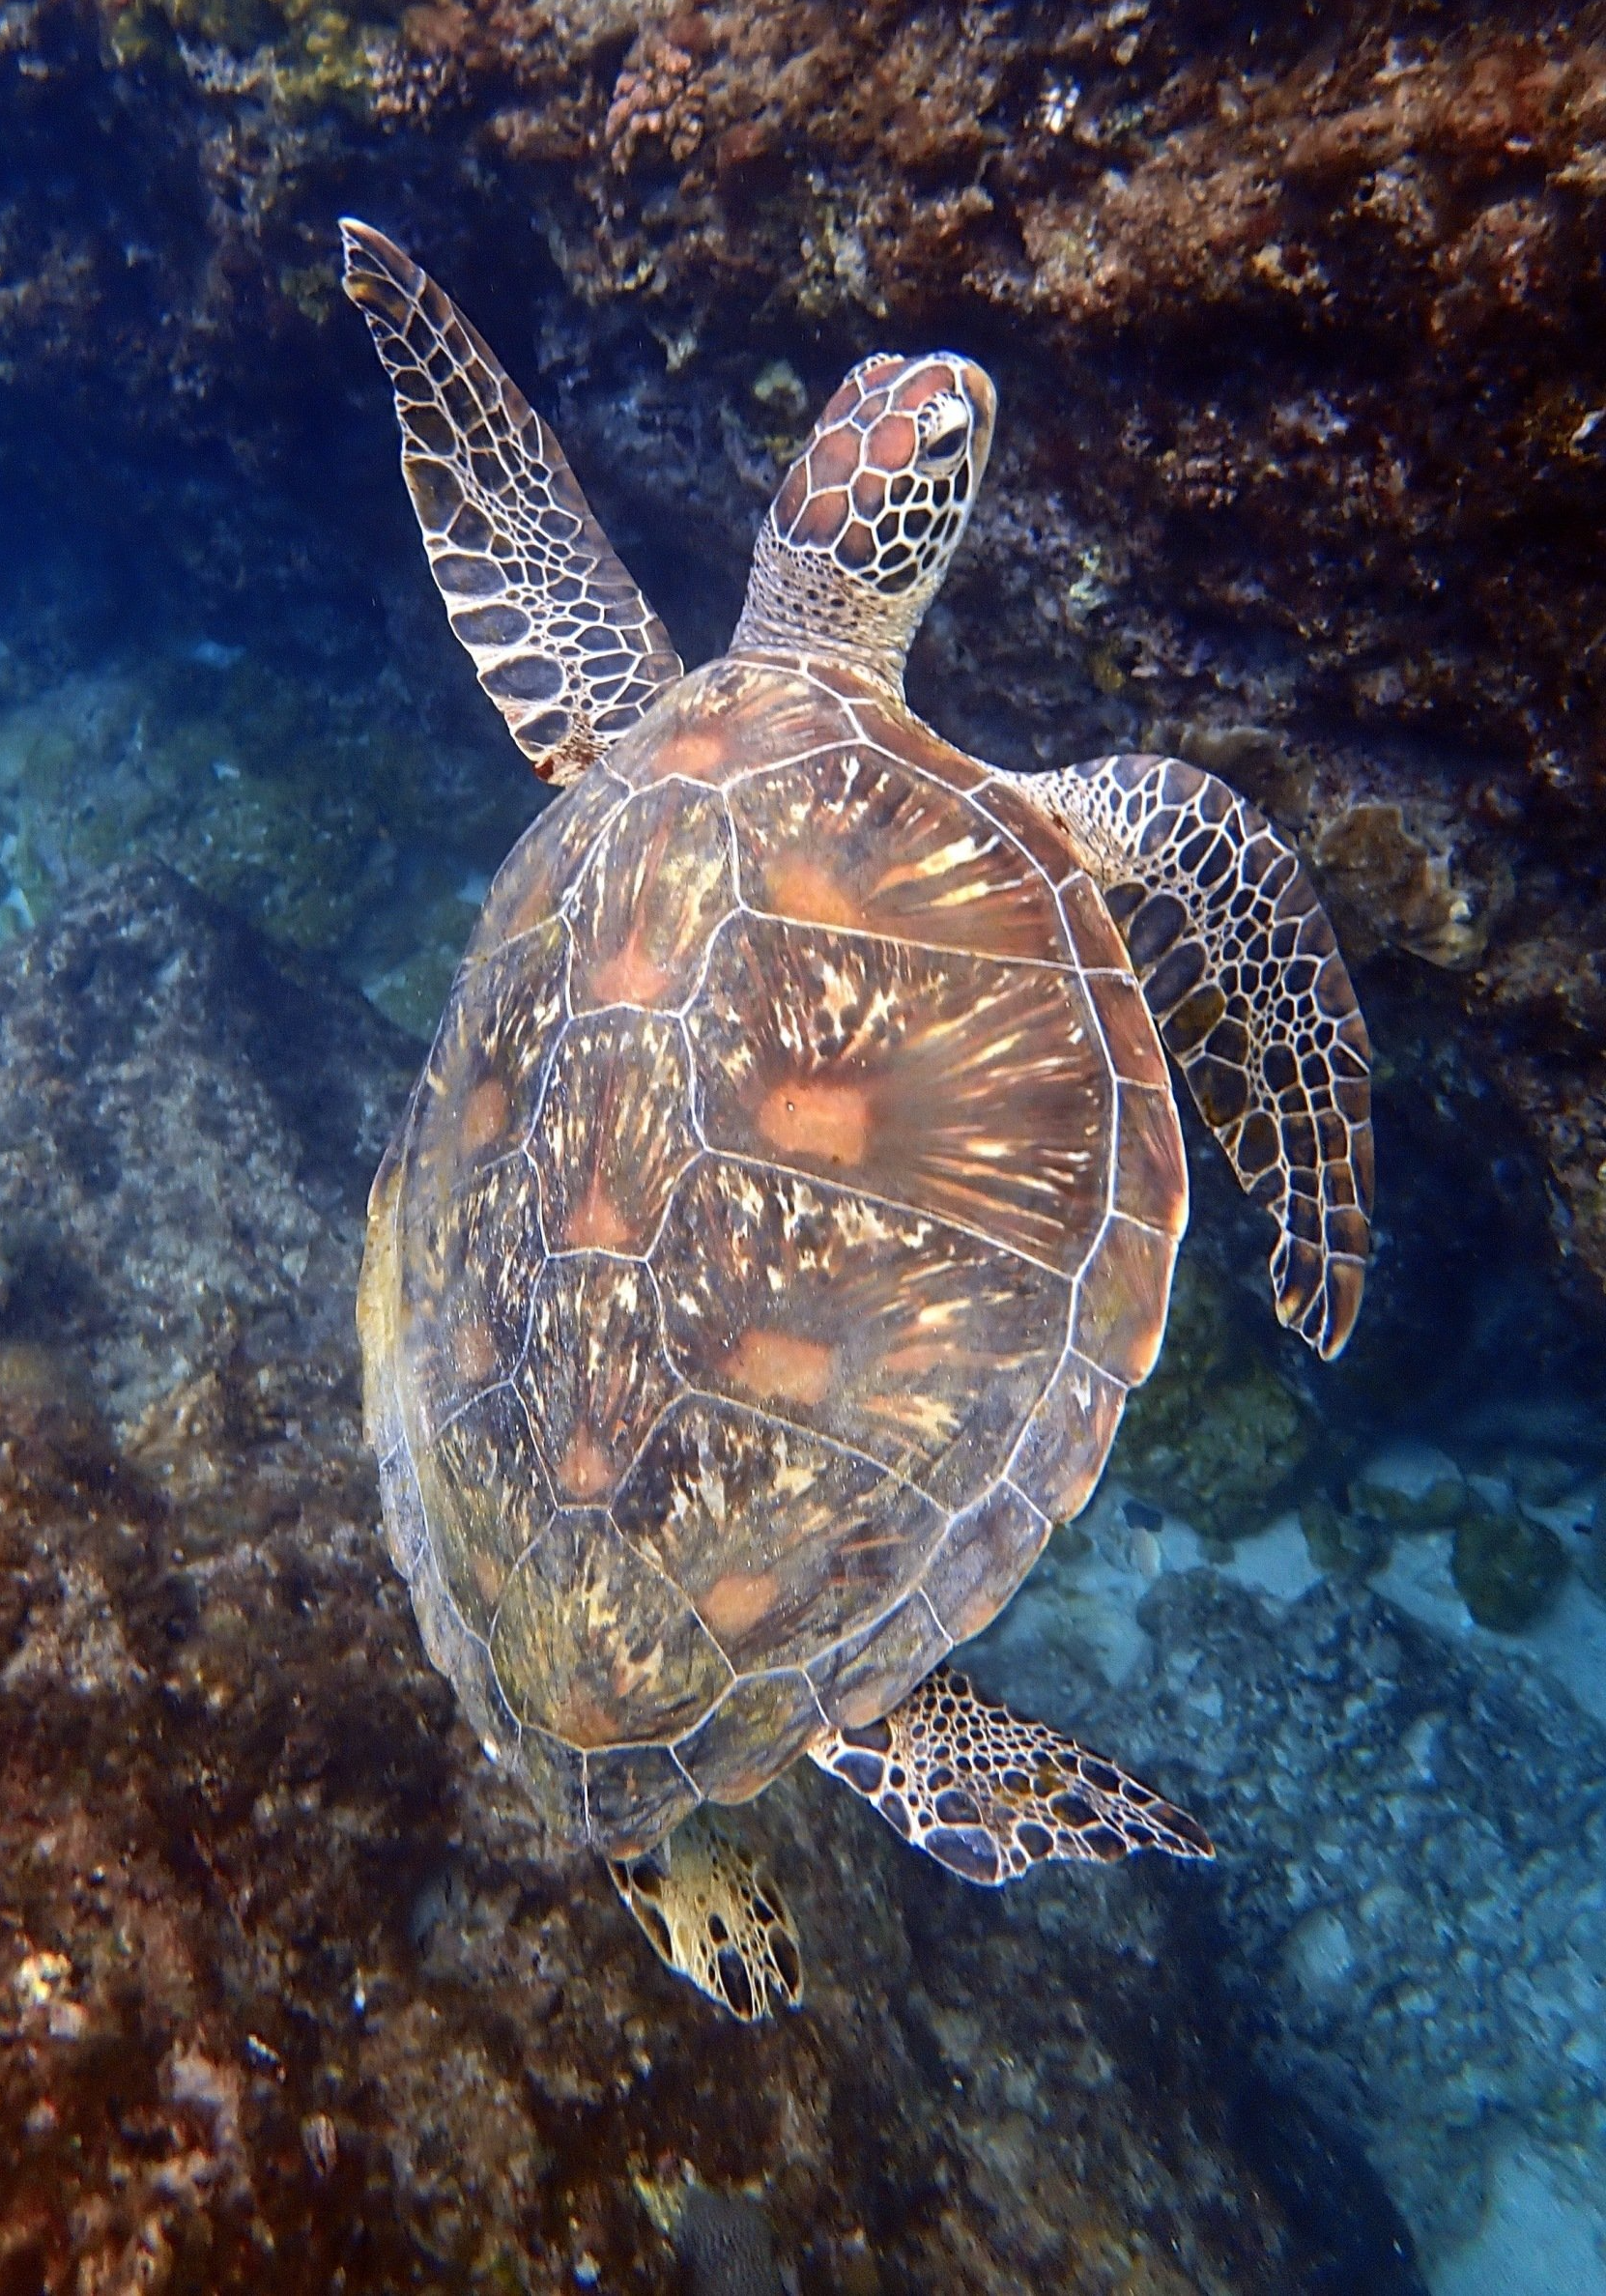 lambai island sea turtle